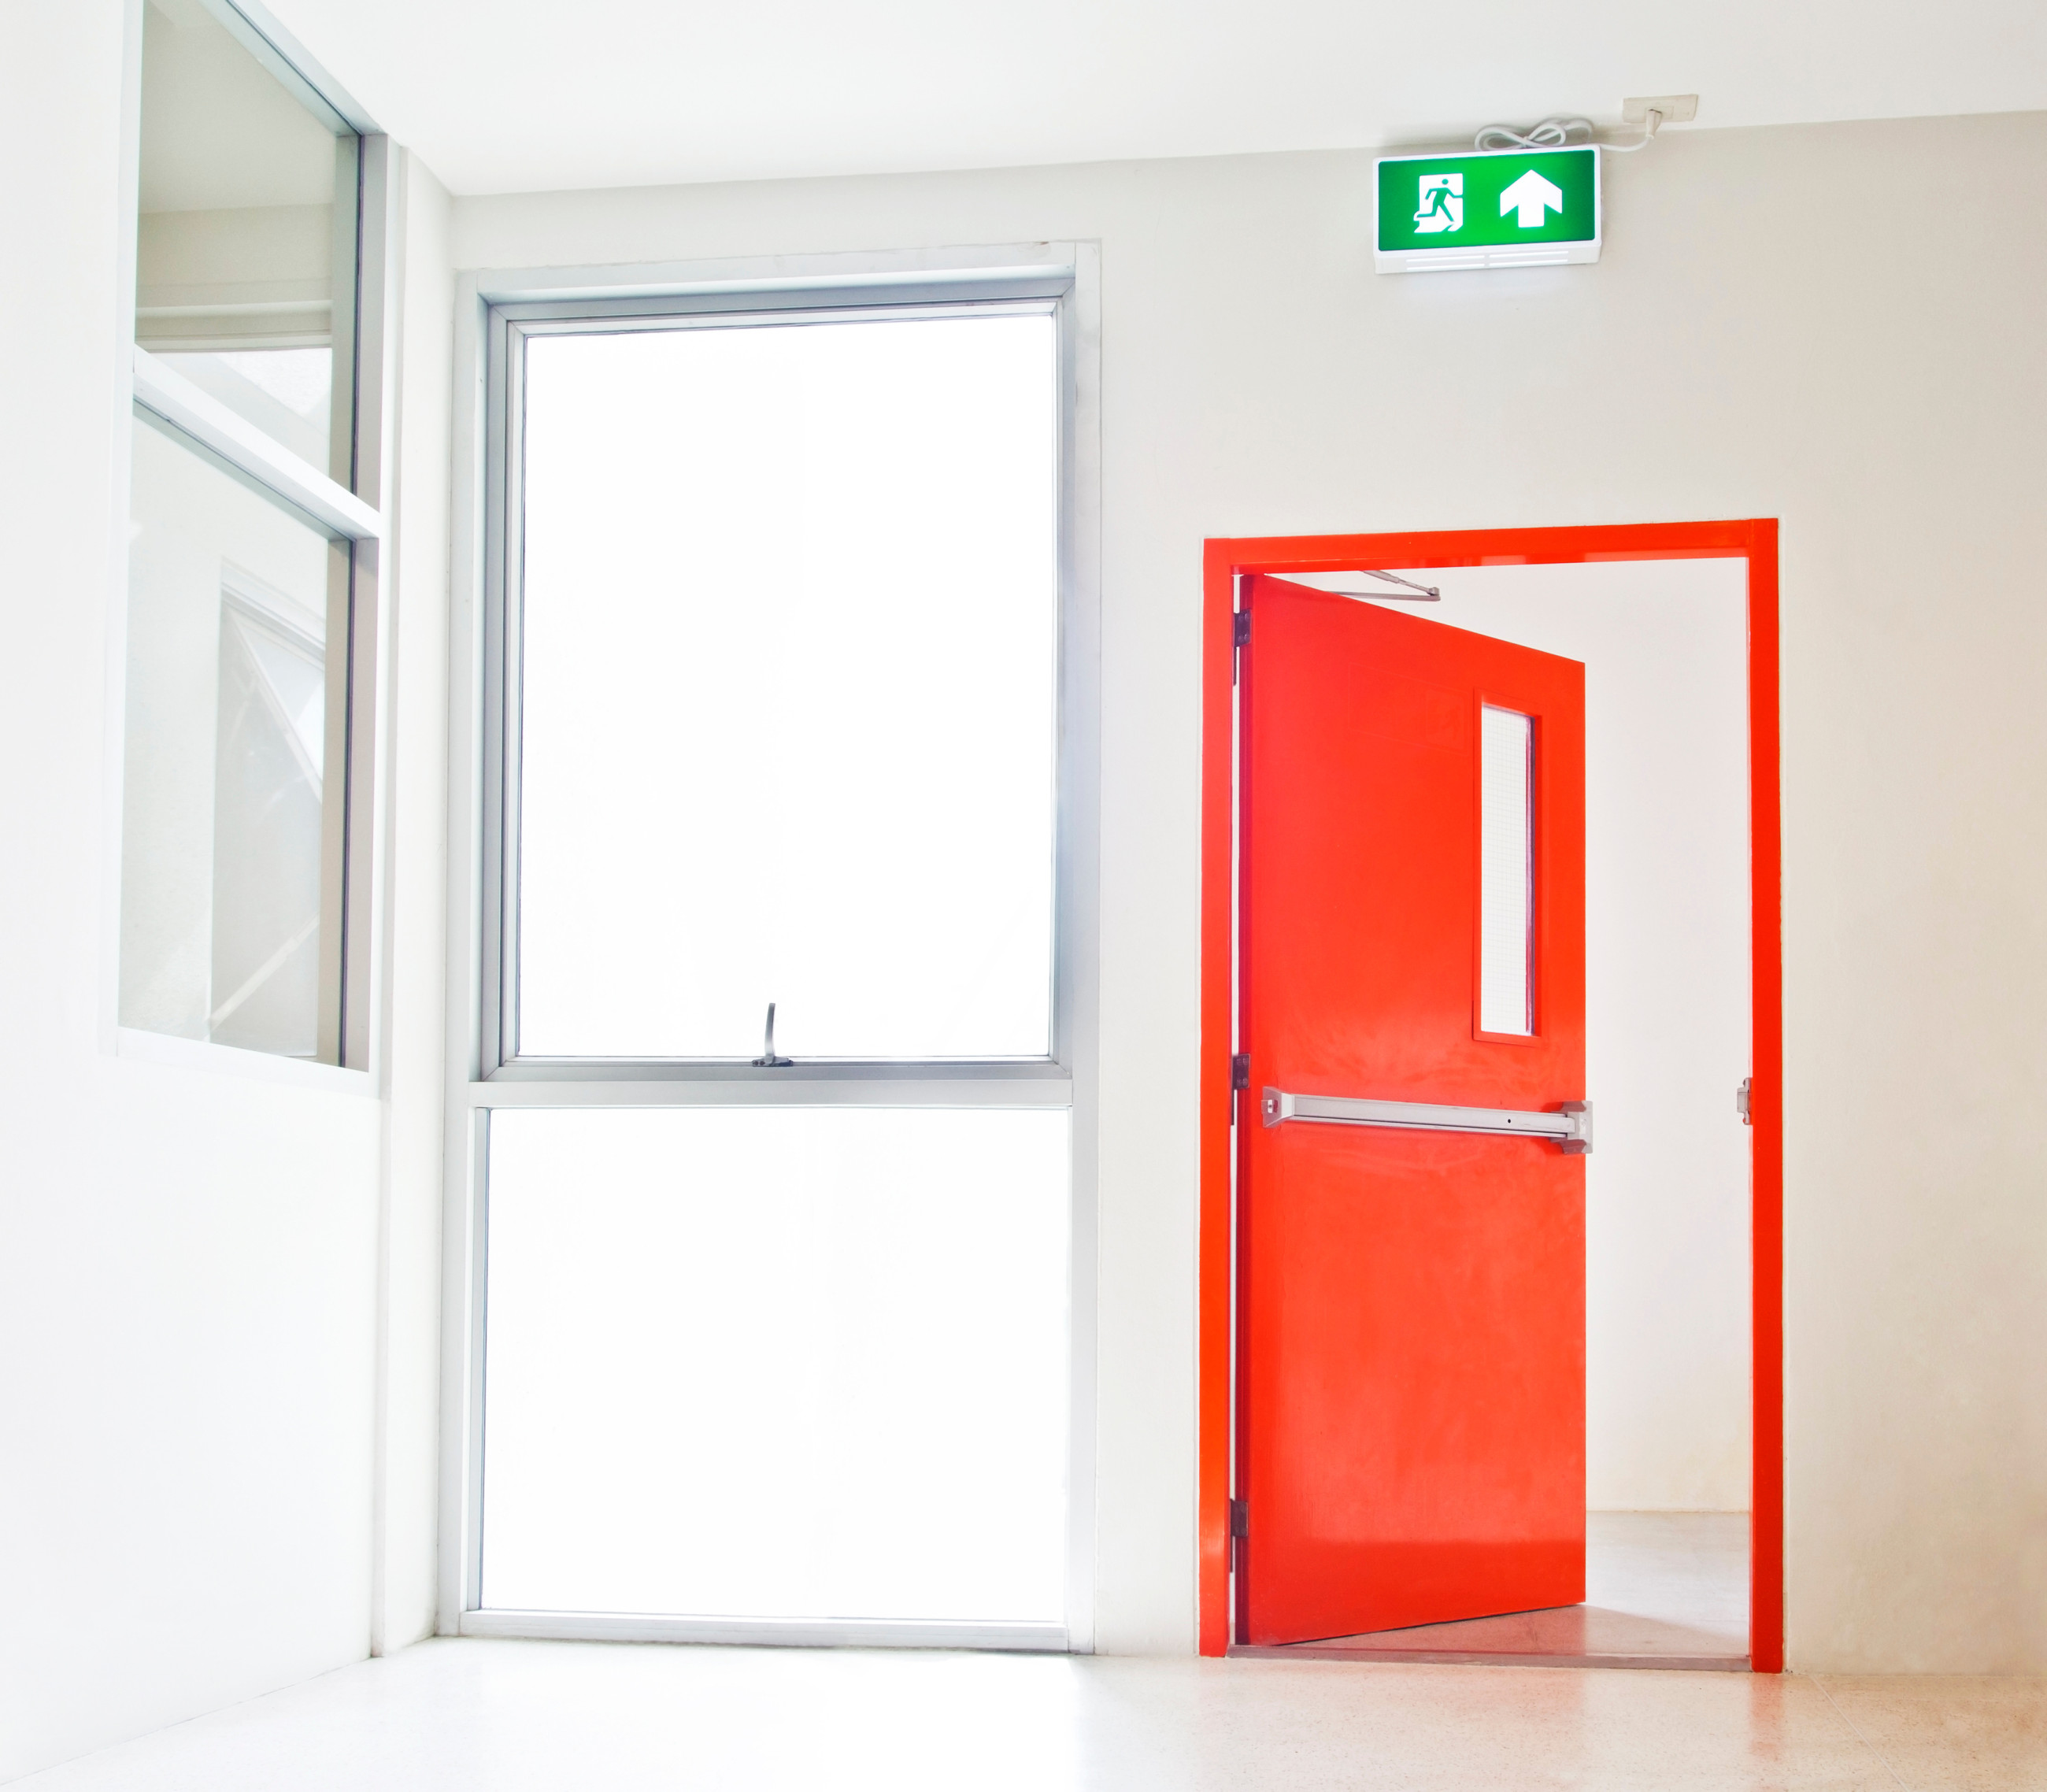 Red fire exit door beside glass windows